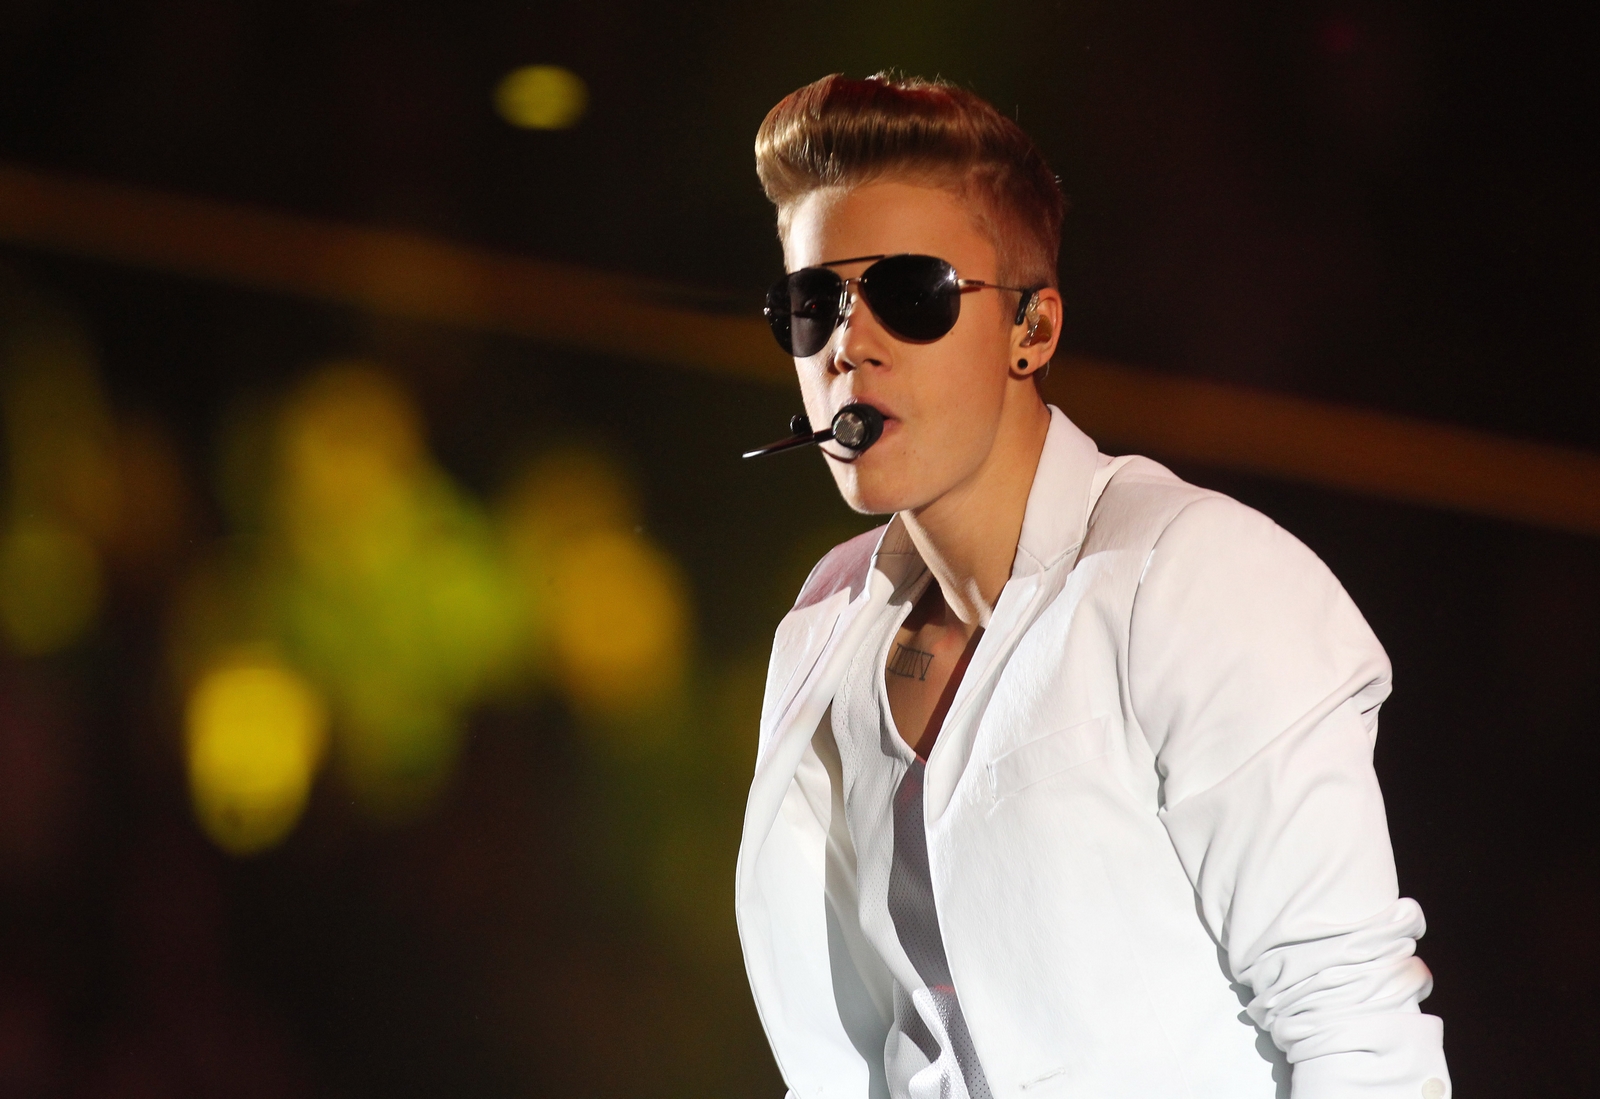 Kocham was Rosja" - Justin Bieber wystąpił w Atlas Arenie - GazetaPrawna.pl